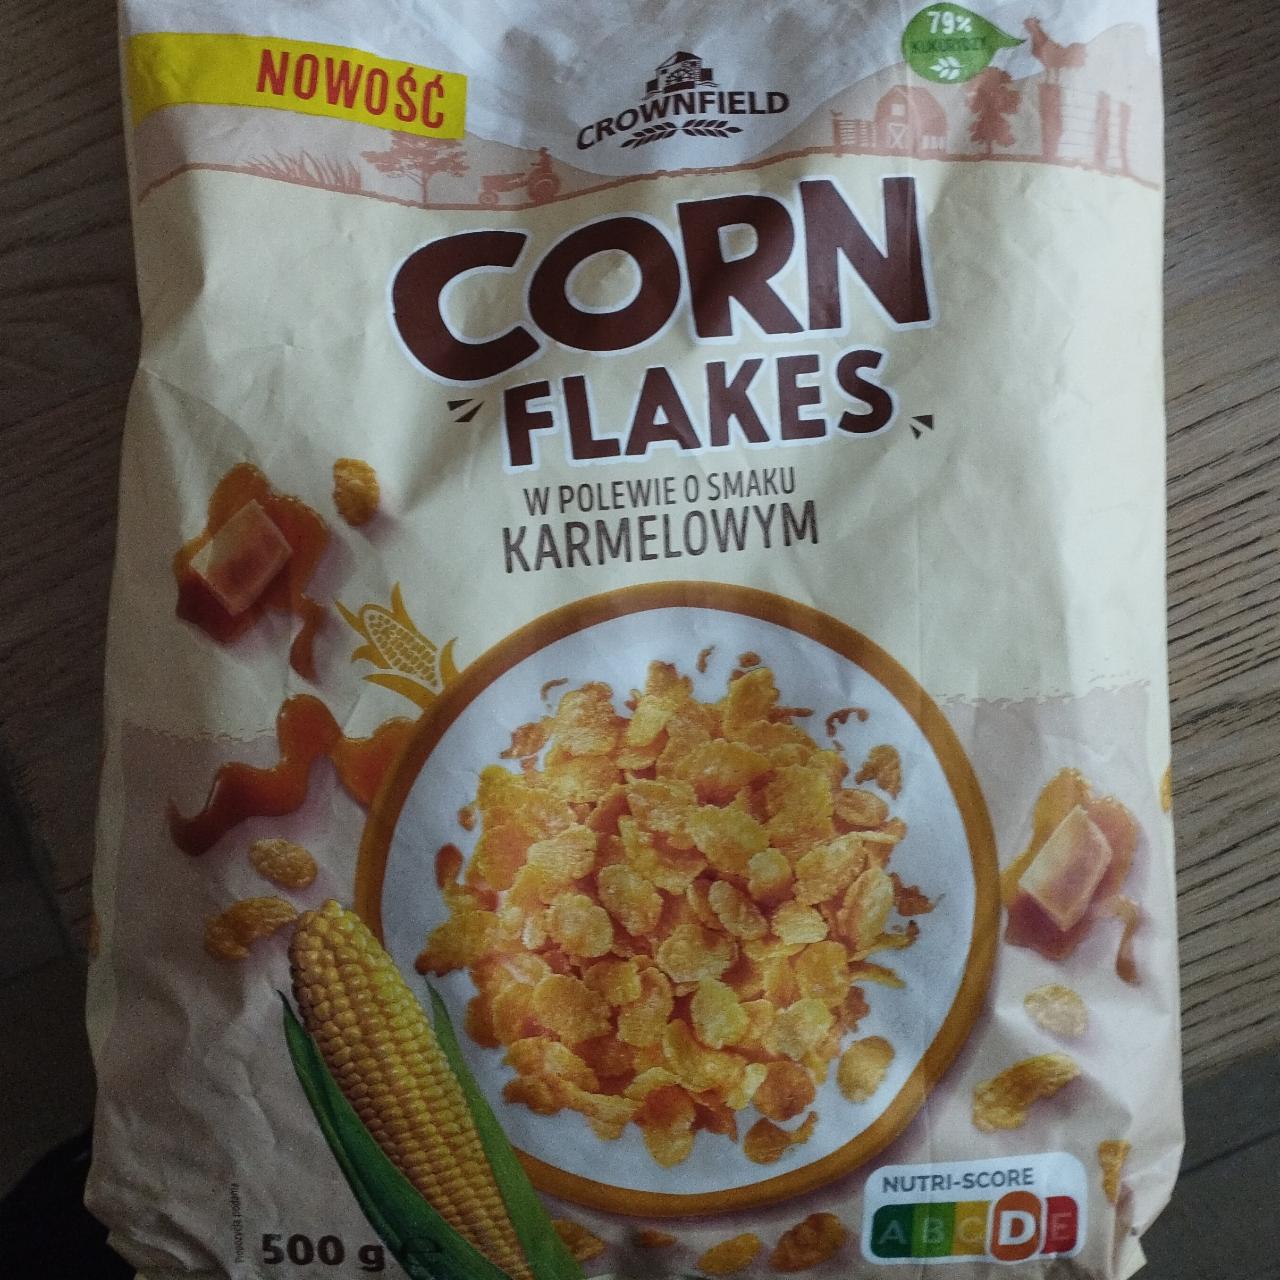 Zdjęcia - Płatki corn flakes w polewie o smaku karmelowym Crownfield